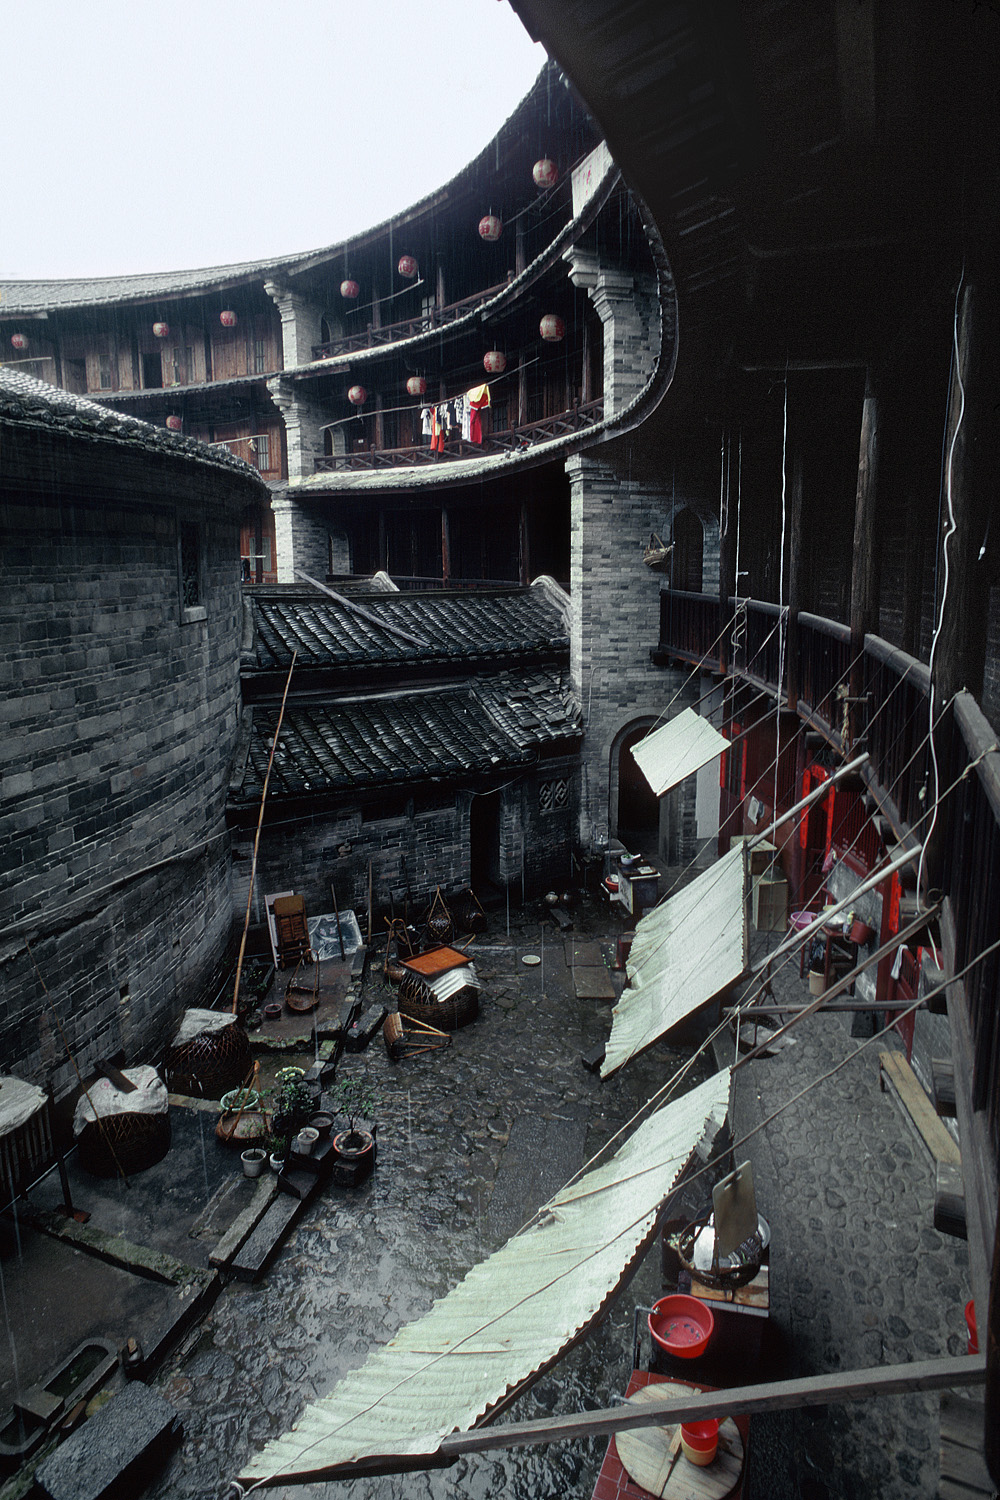 bill-hocker-clan-house-courtyard-fujian-province-china-2002